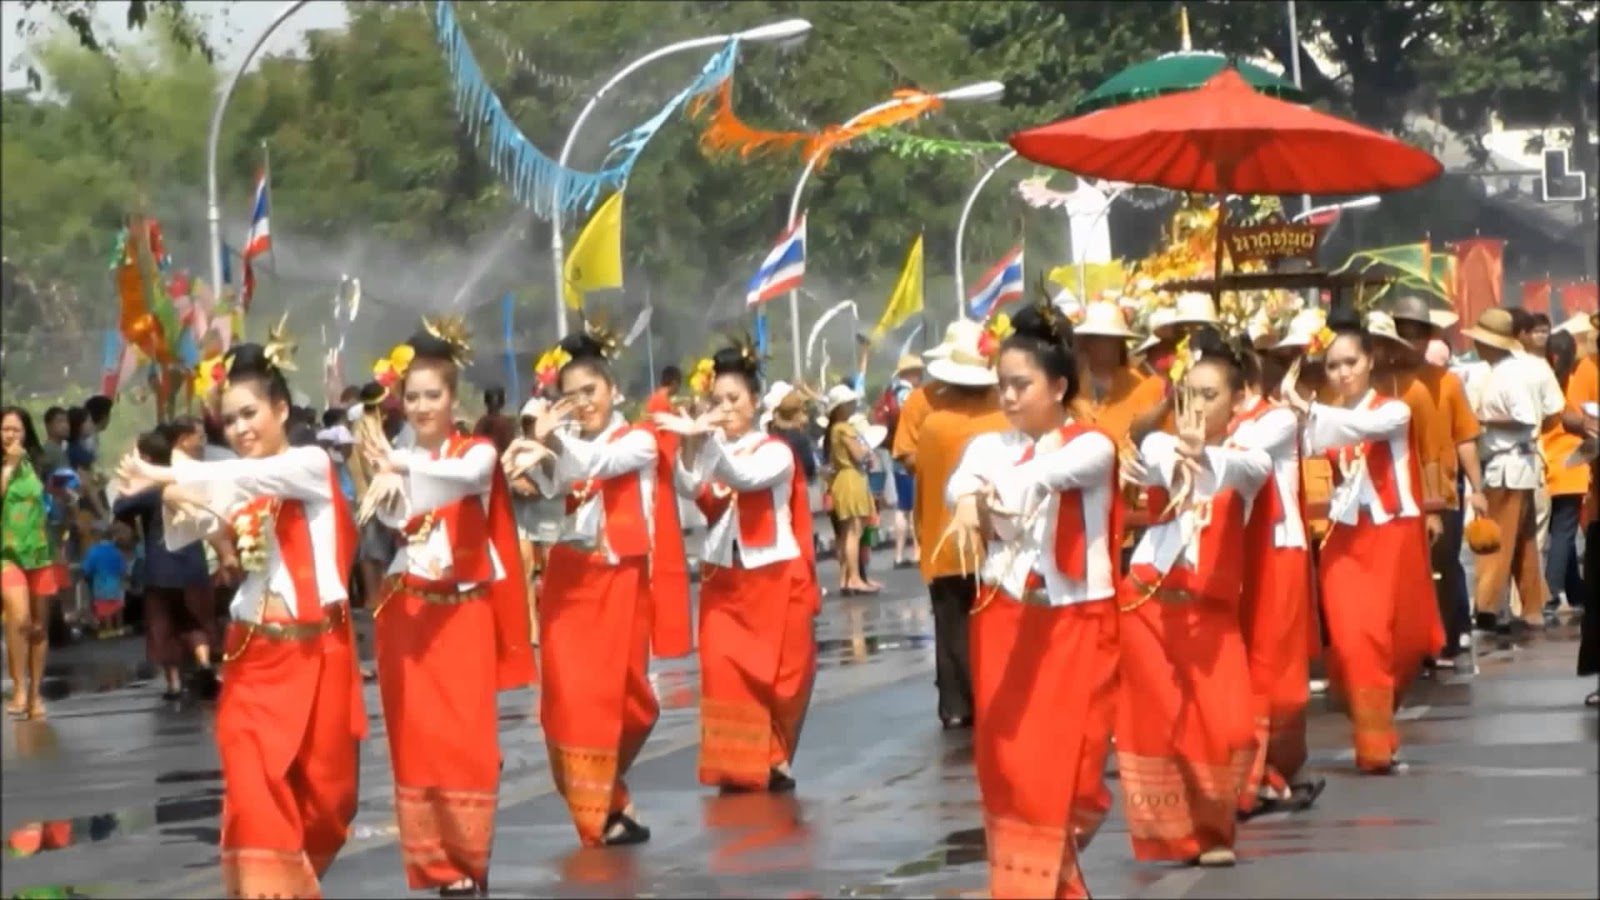 Songkran Festival parade in Chiang Mai, Thailand. Photo taken on April 13, 2014.